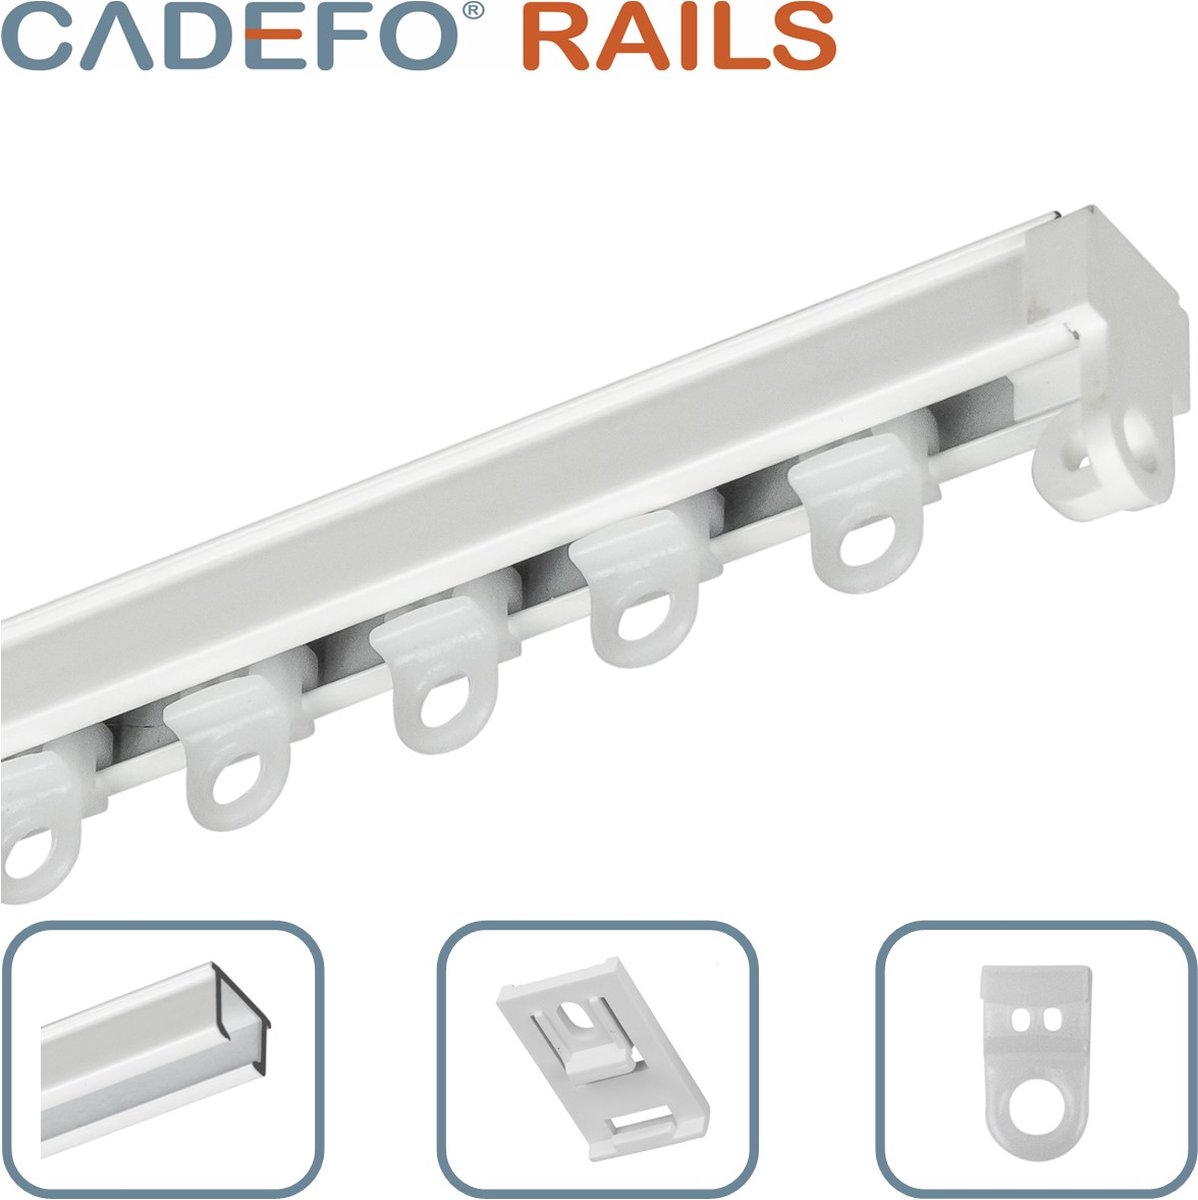 CADEFO RAILS (551 - 600 cm) Gordijnrails - Compleet op maat! - UIT 1 STUK - Leverbaar tot 6 meter - Plafondbevestiging - Lengte 552 cm